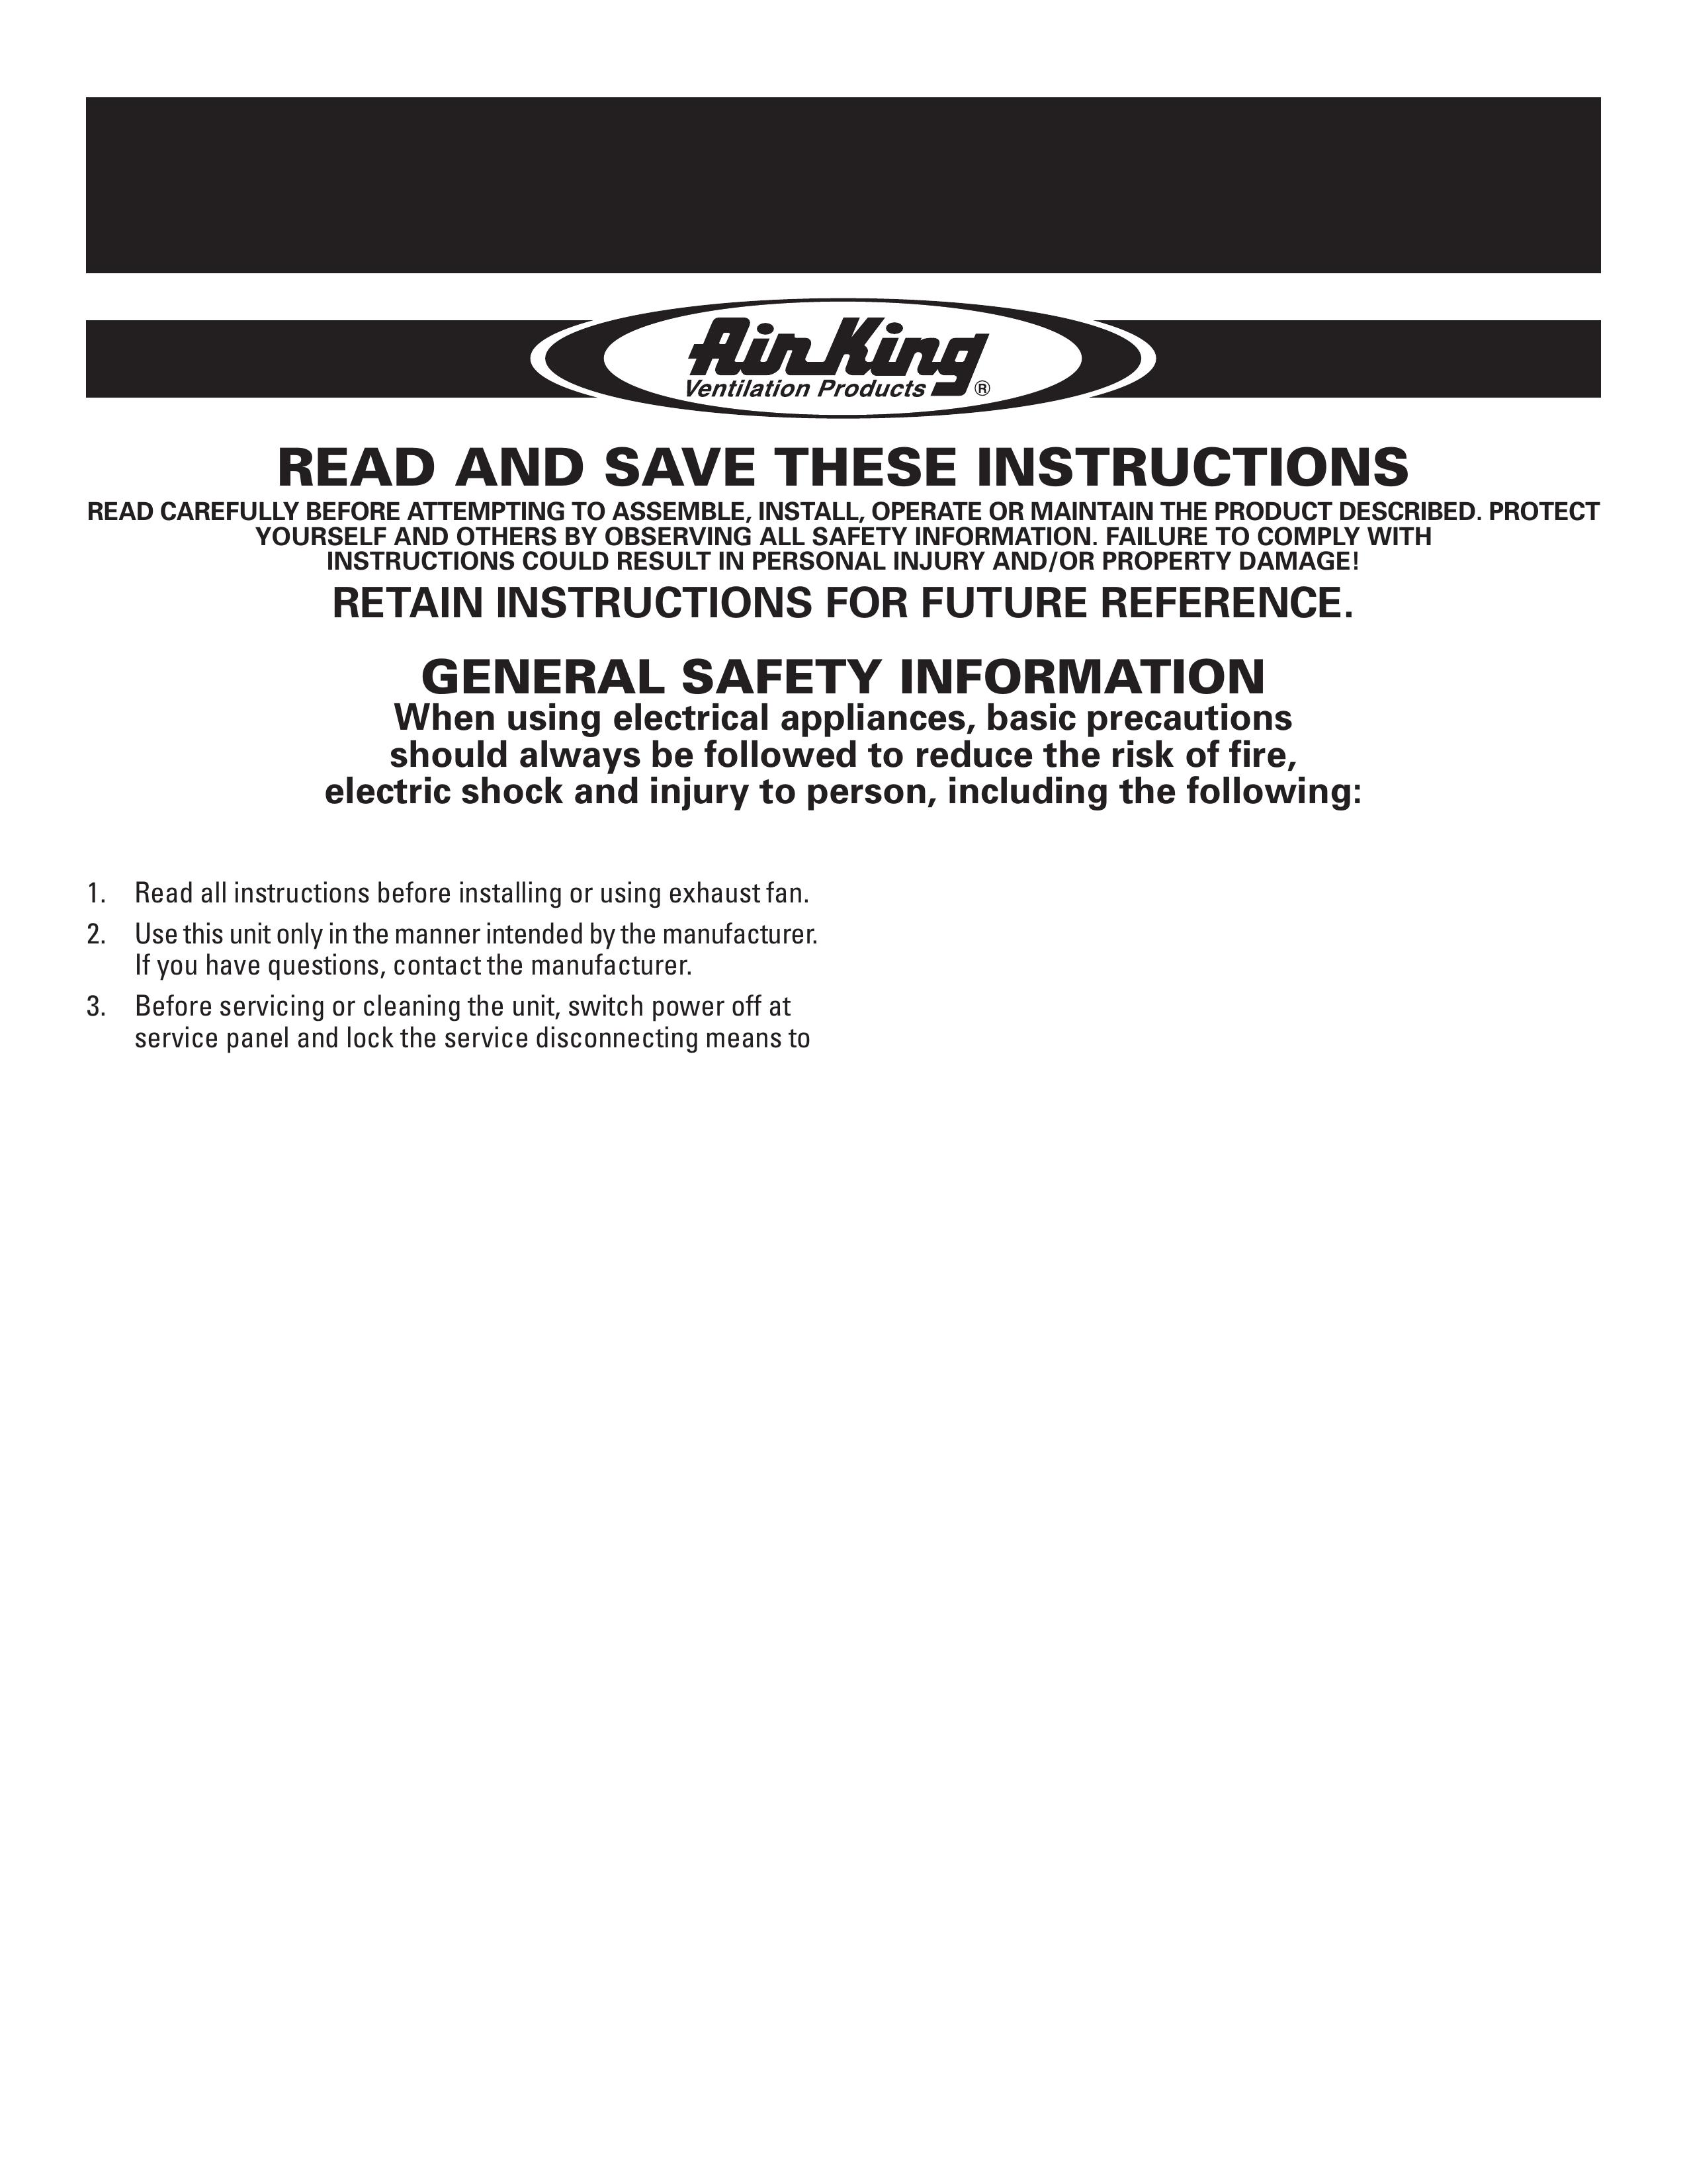 Air King AK130 Blower User Manual (Page 1)